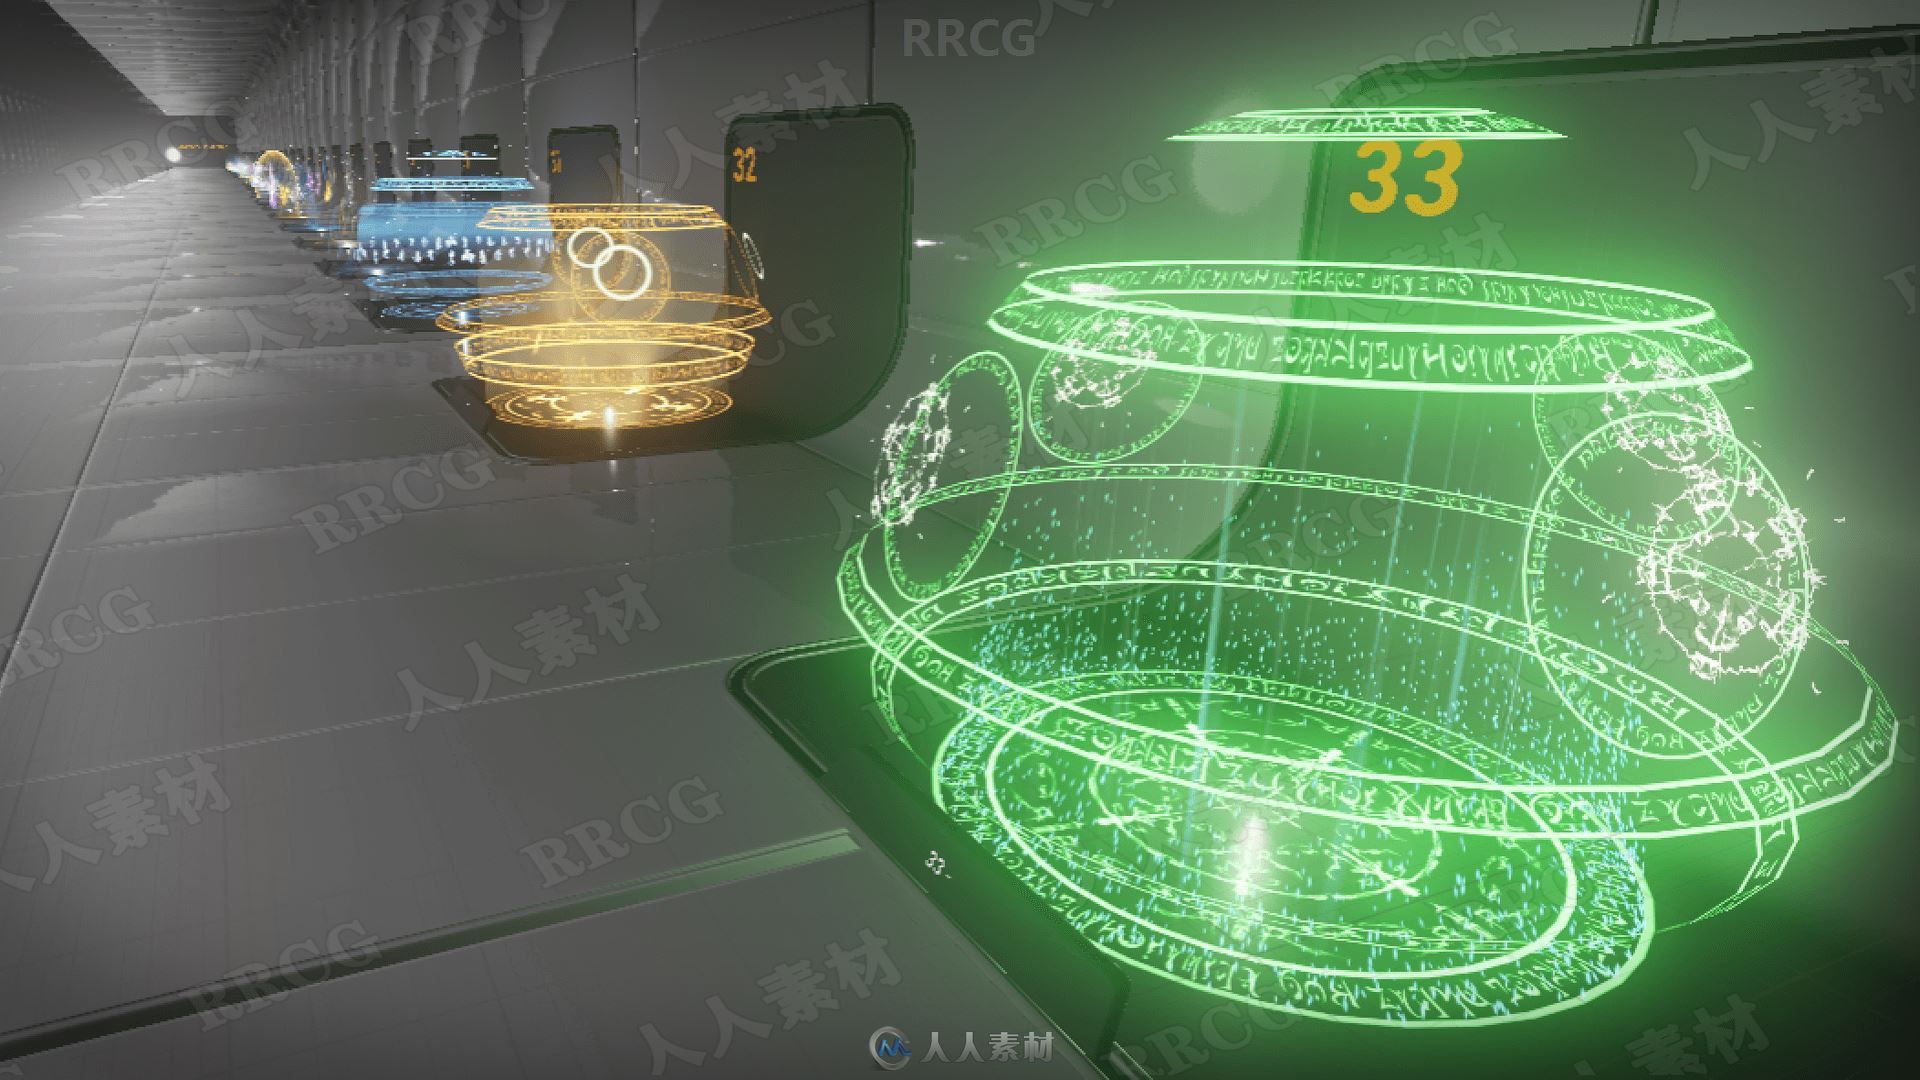 33中魔法幻想荧光区域视觉特效Unreal Engine游戏素材资源